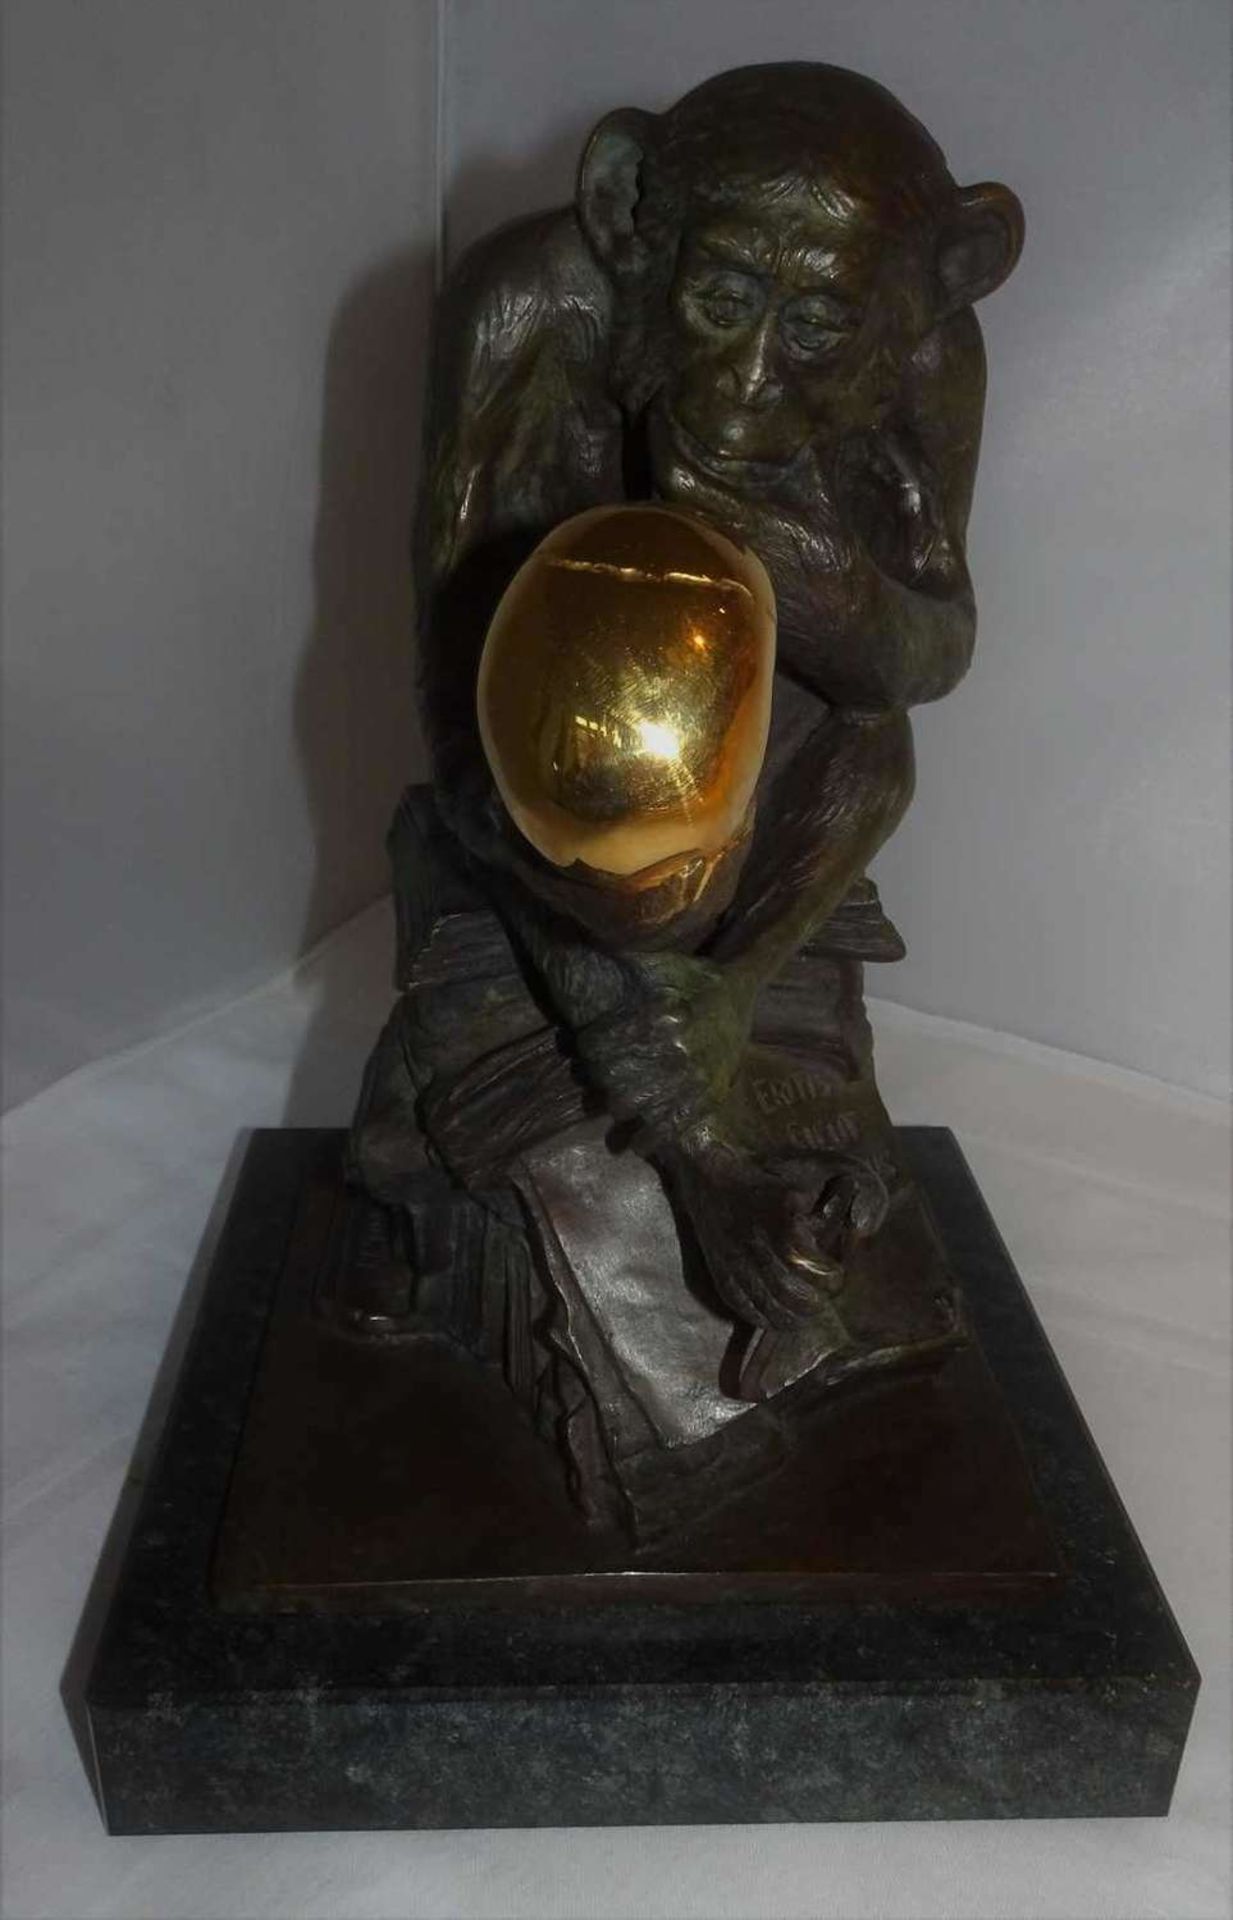 Bronzefigur "Affe mit Schädel" von Wolfgang Hugo Rheinhold, Gießerei Arsmundi. Limitierte